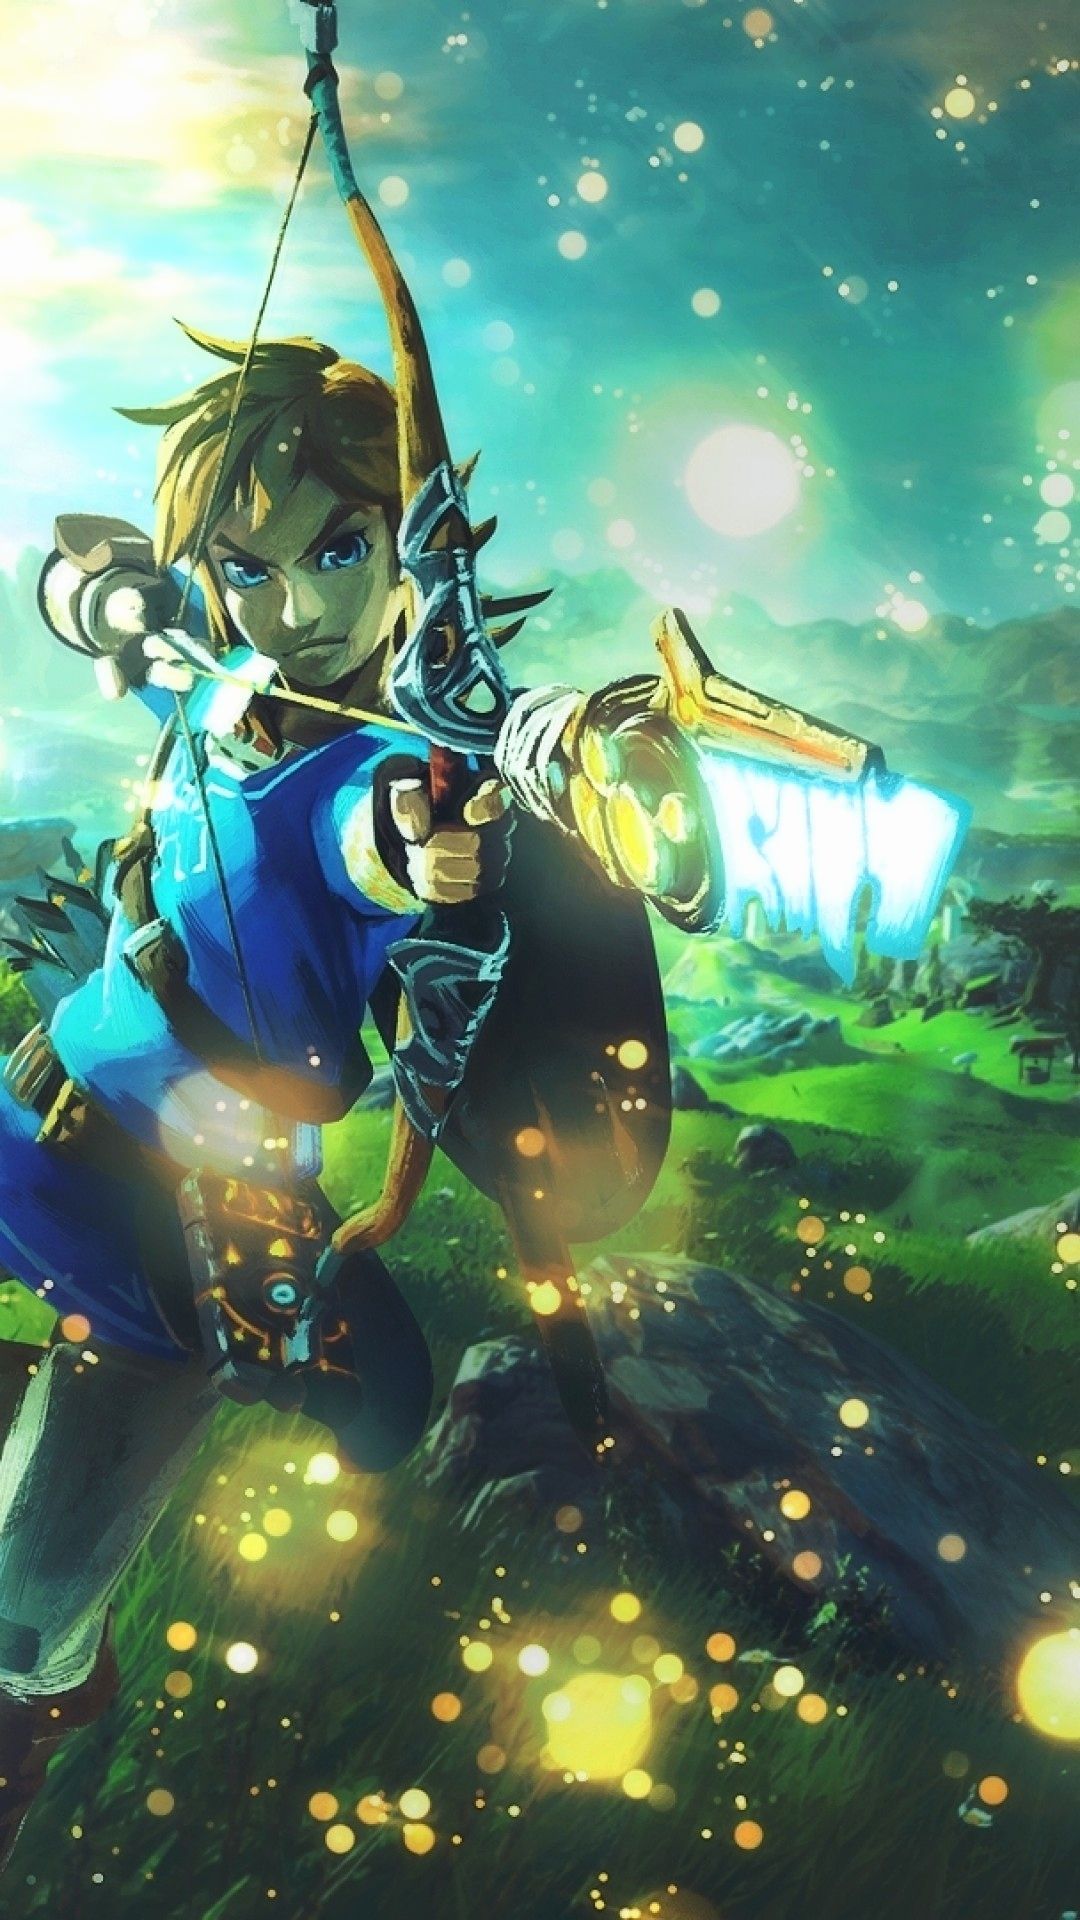 Zelda Wallpaper 4k Lovely Legend Of Zelda Breath Of the Wild